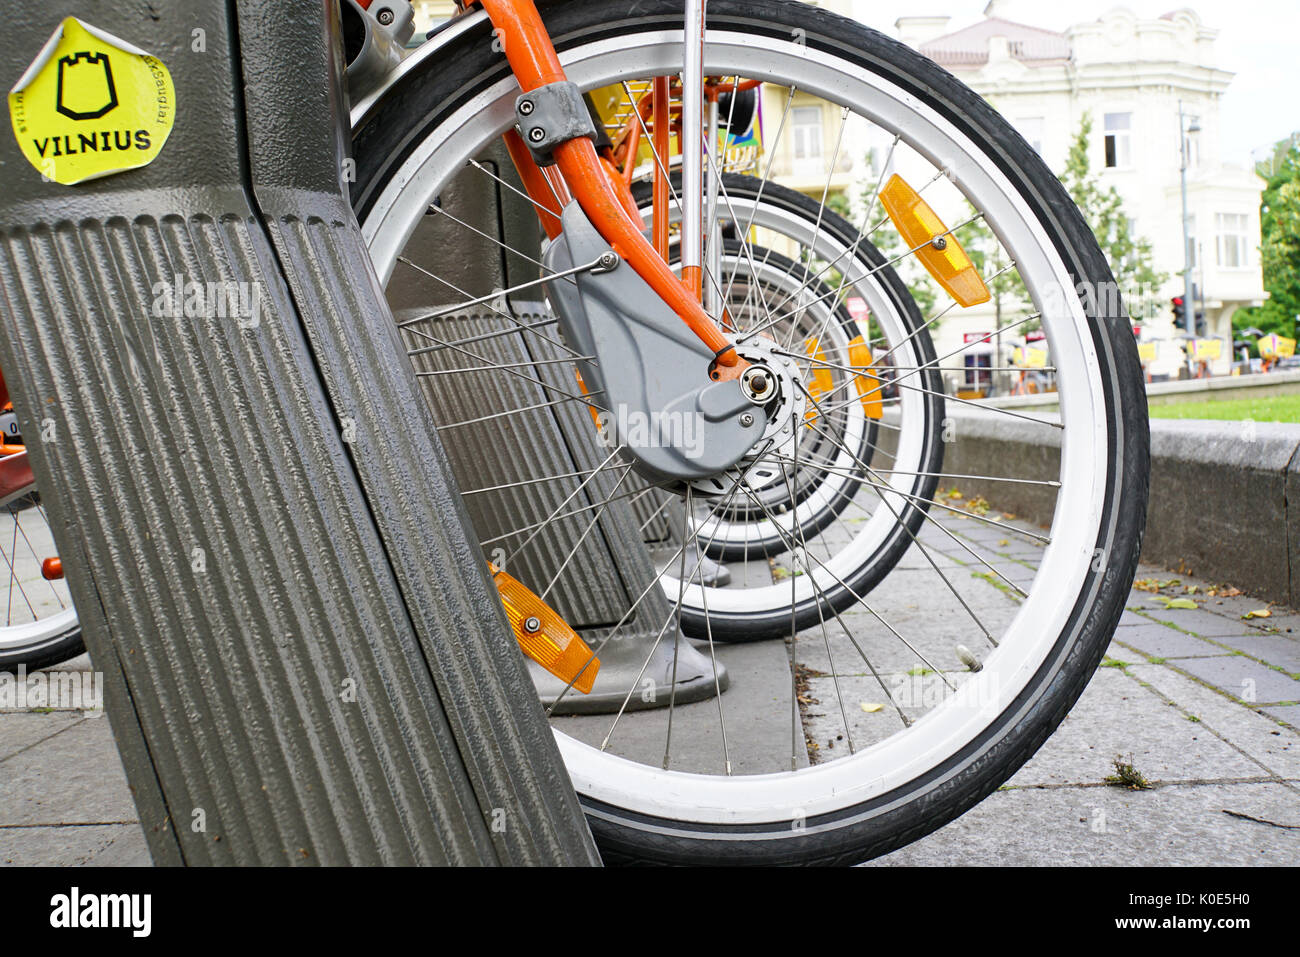 Station de vélo en libre-service dans les rues de Vilnius, Lituanie Banque D'Images